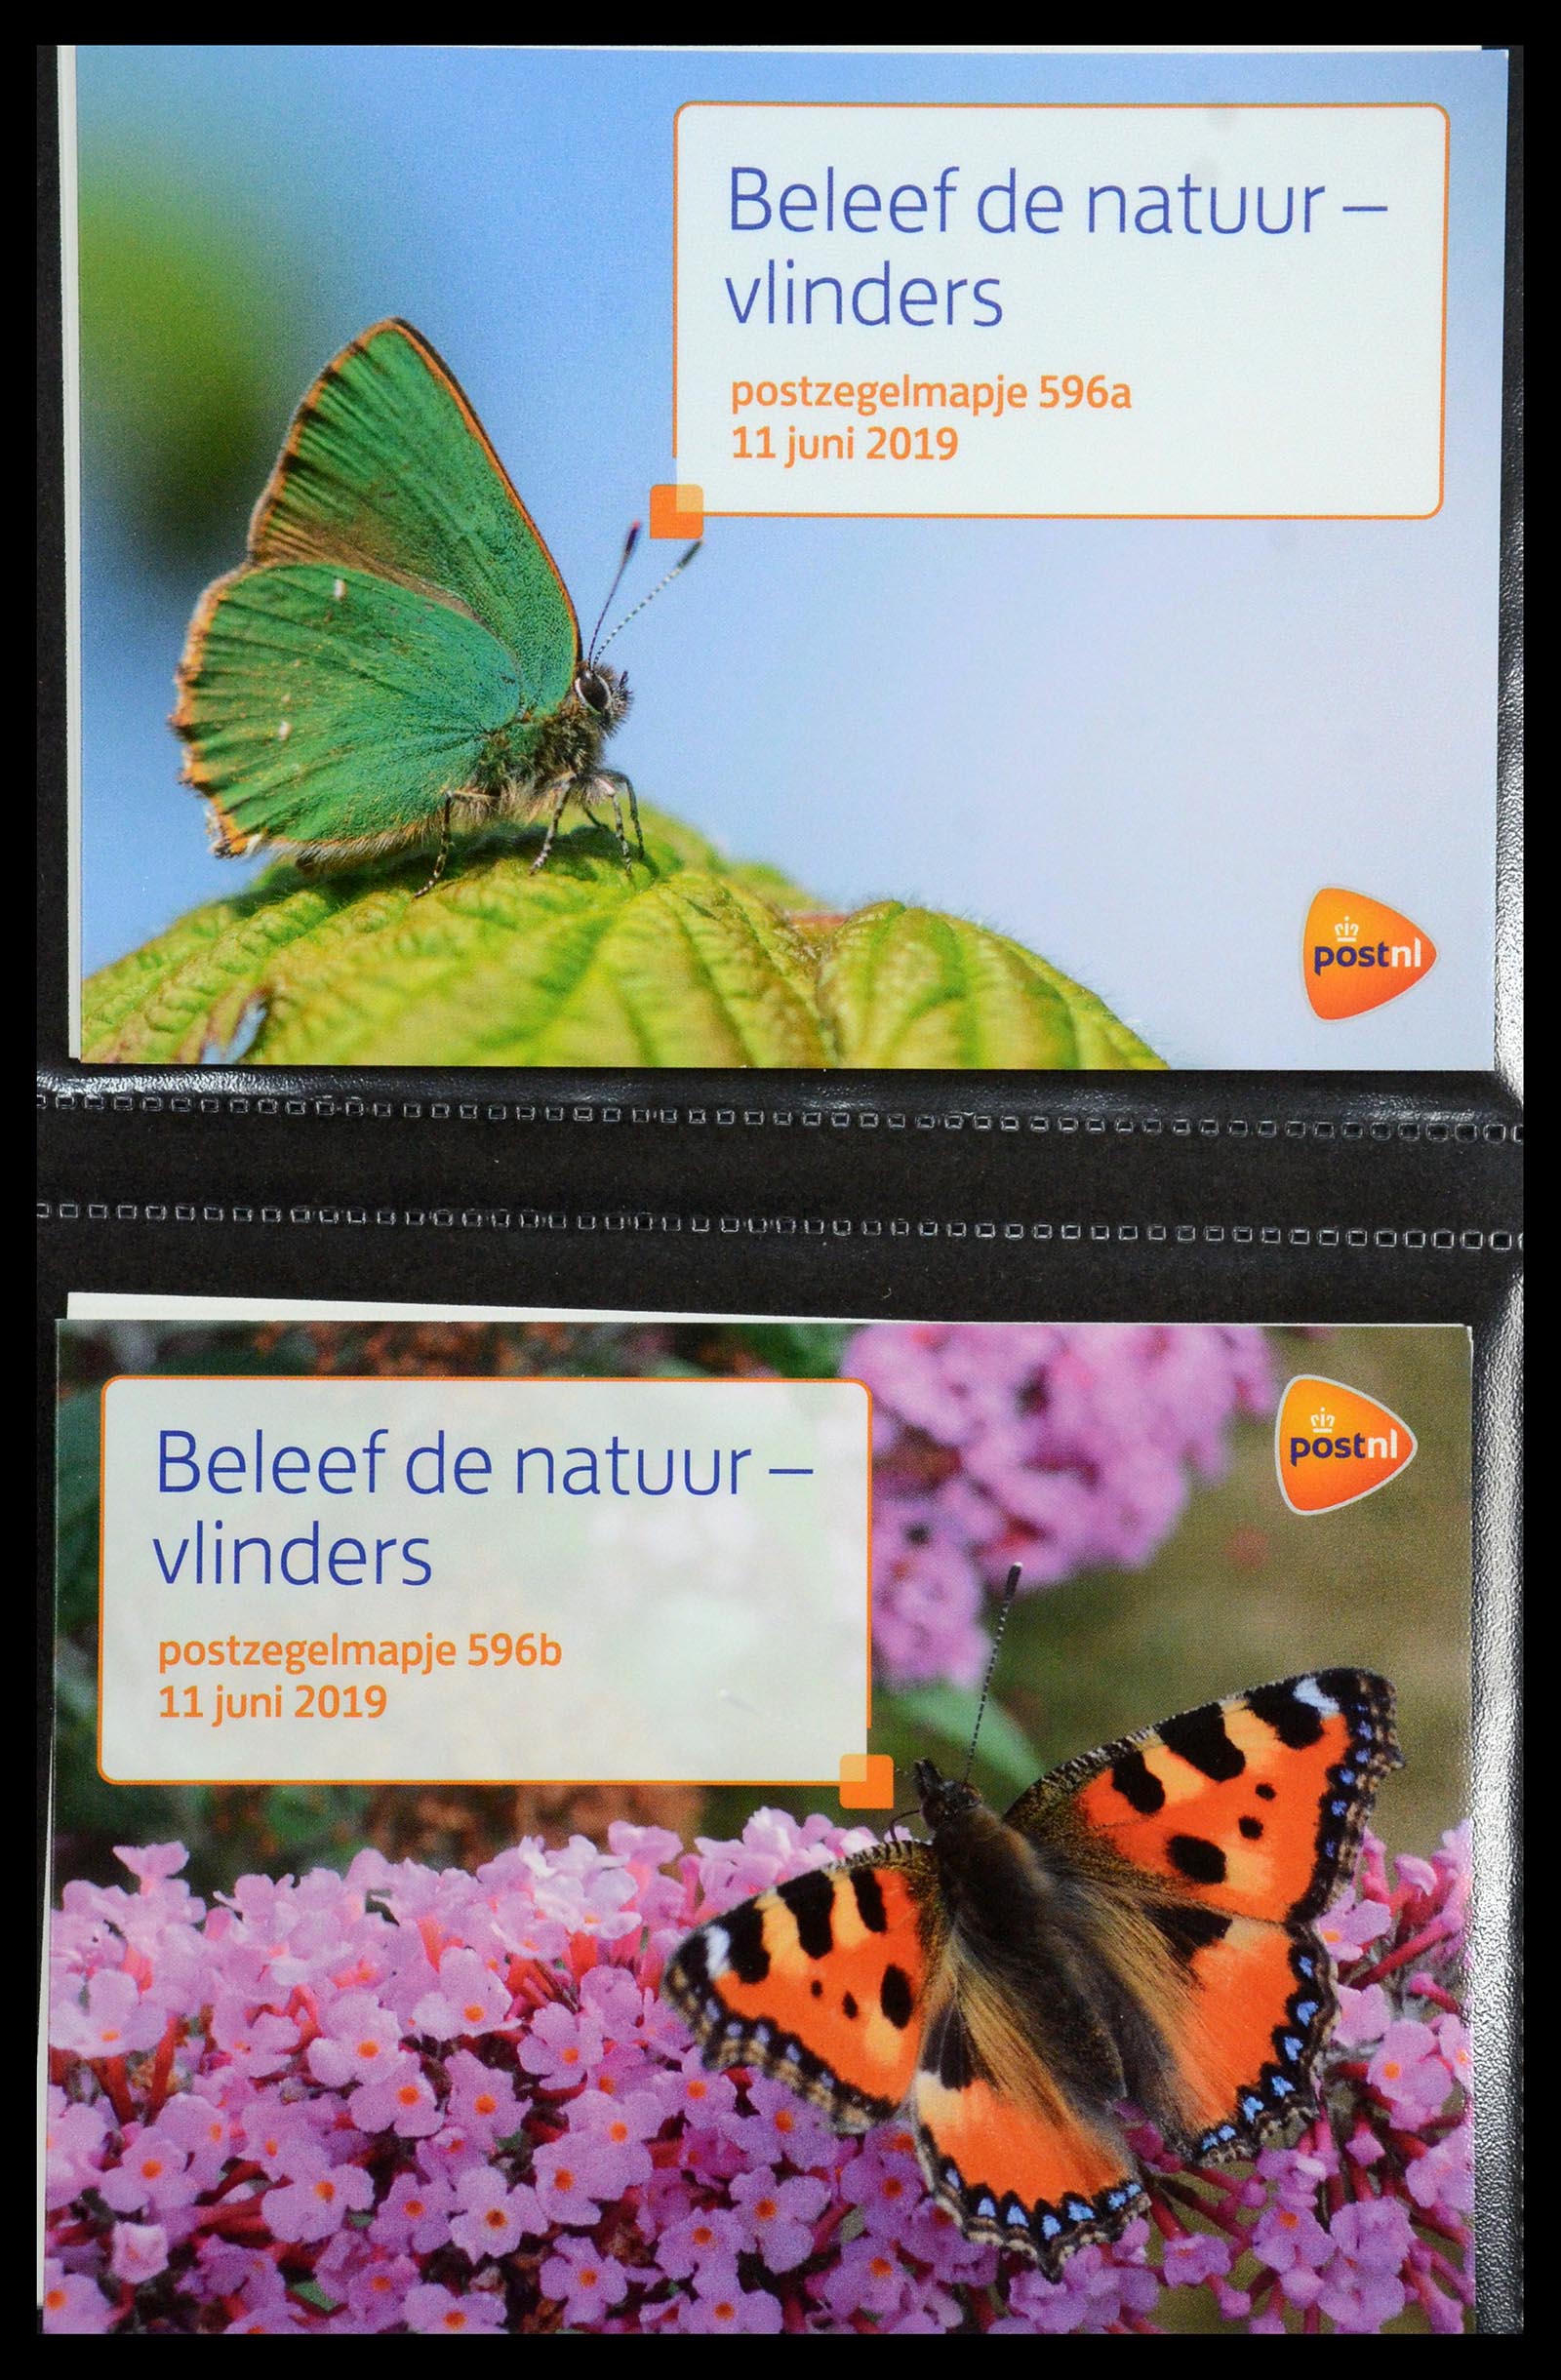 35144 361 - Stamp Collection 35144 Netherlands PTT presentation packs 1982-2021!